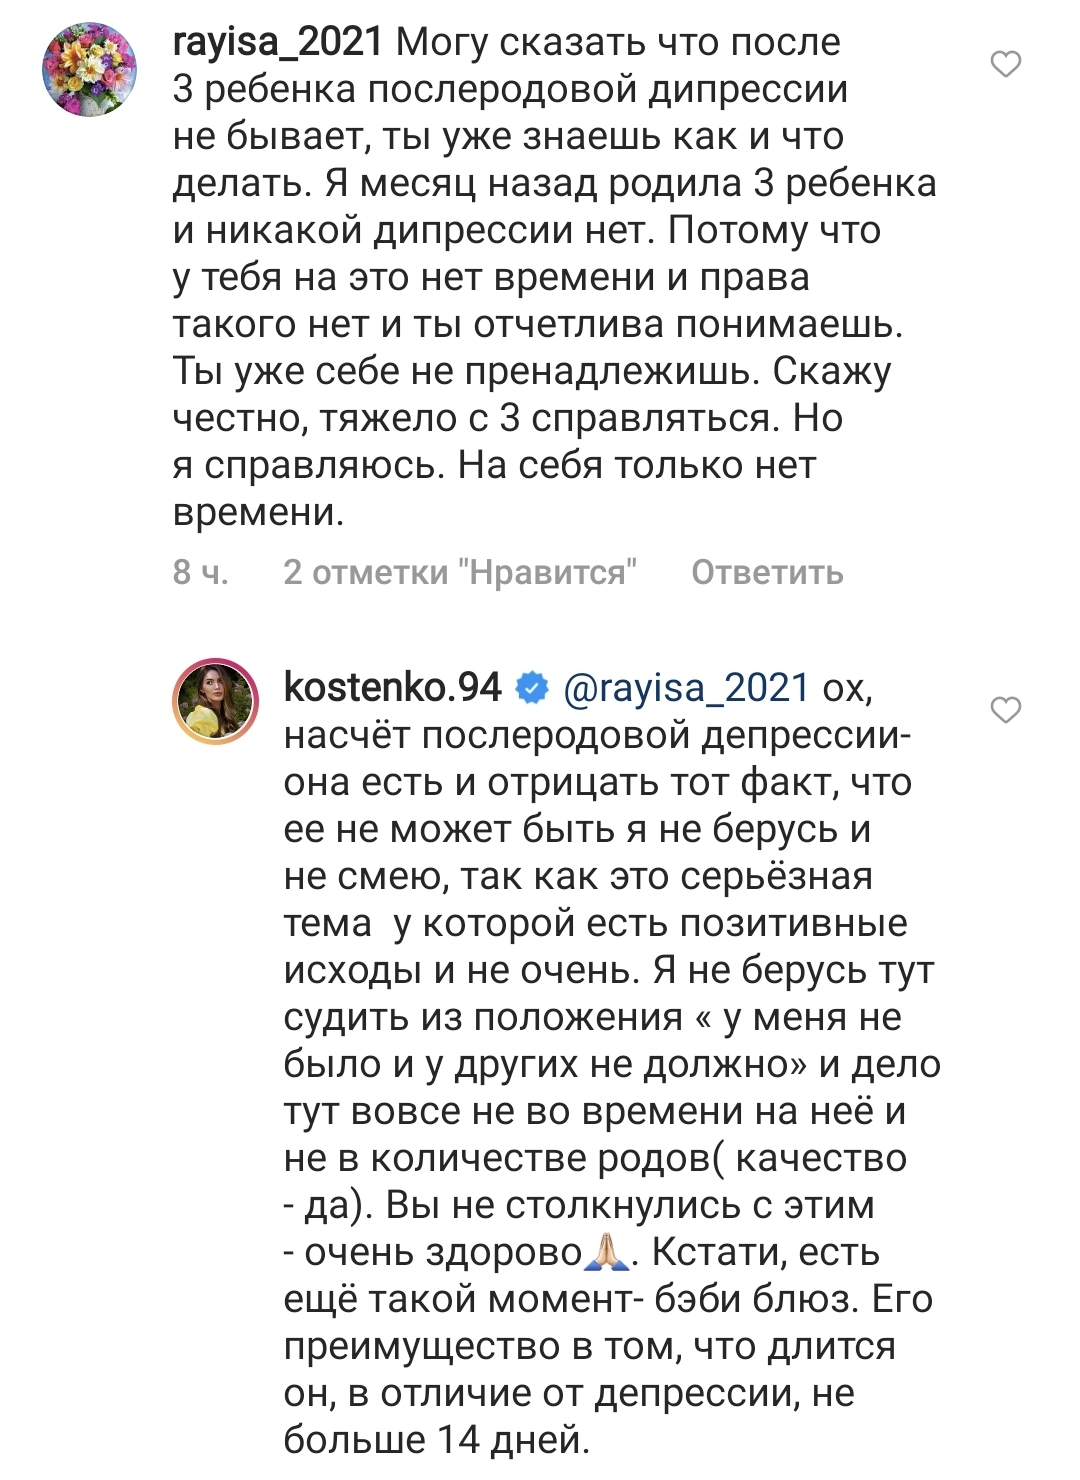 Анастасия Костенко заговорила о послеродовой депрессии, а ей напомнили, что на улице +5 и не время ходить в мини-шортах